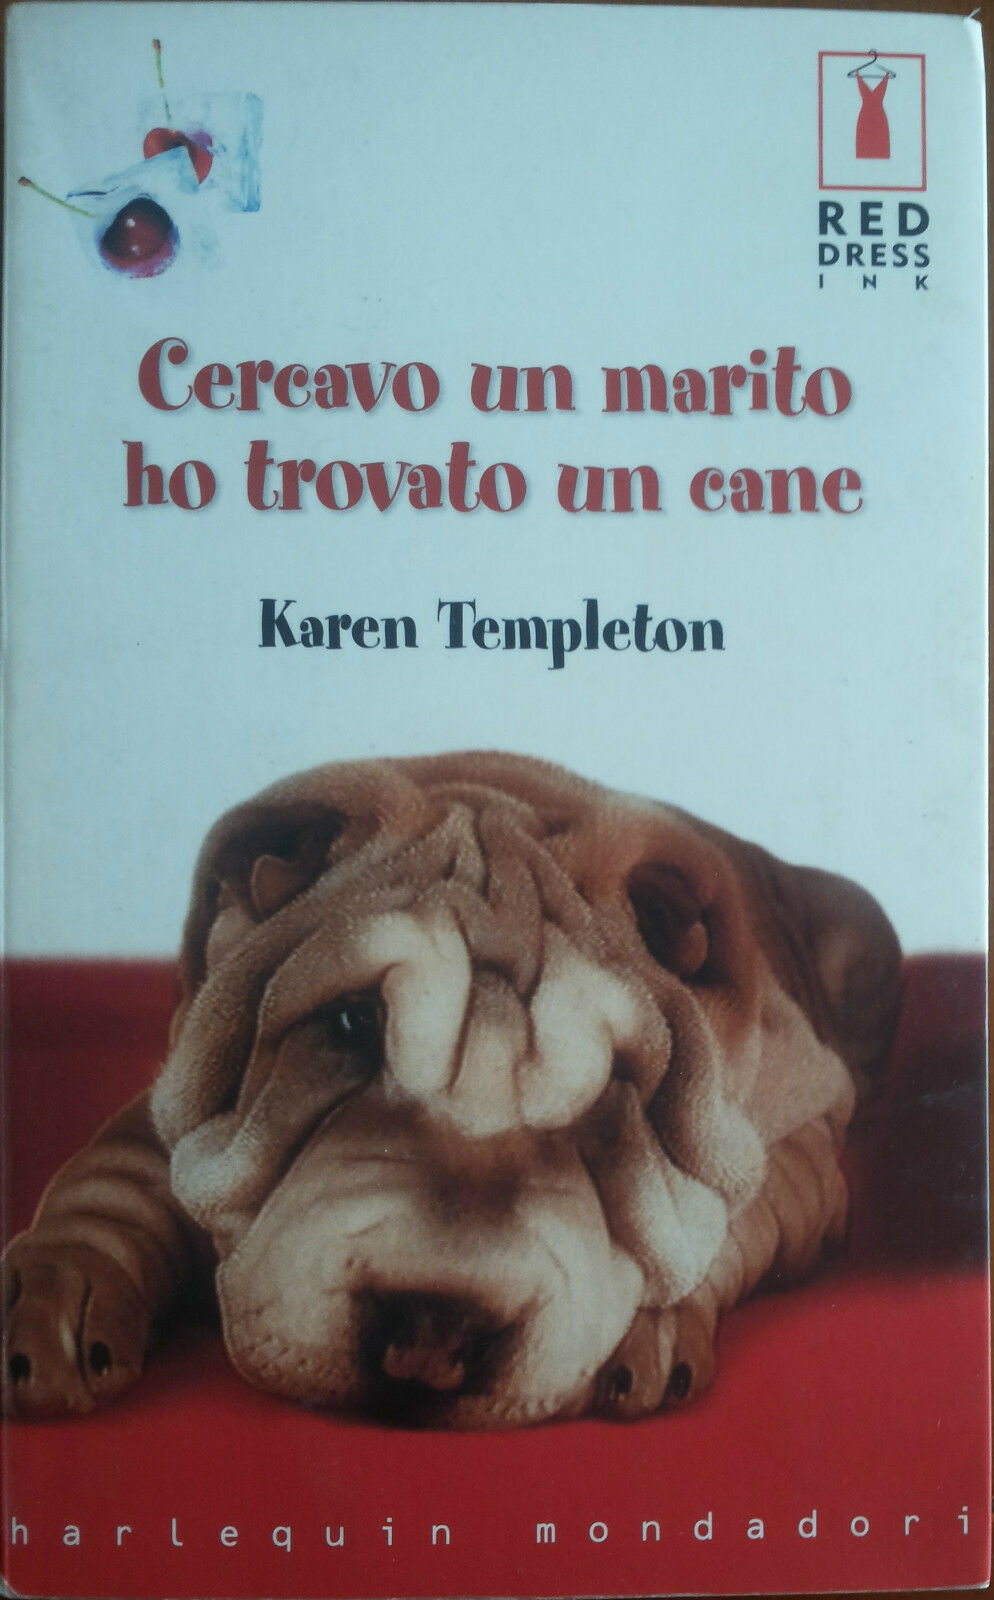 Cercavo un marito ho trovato un cane - Karen Templeton - Harlequin Mondadori - A